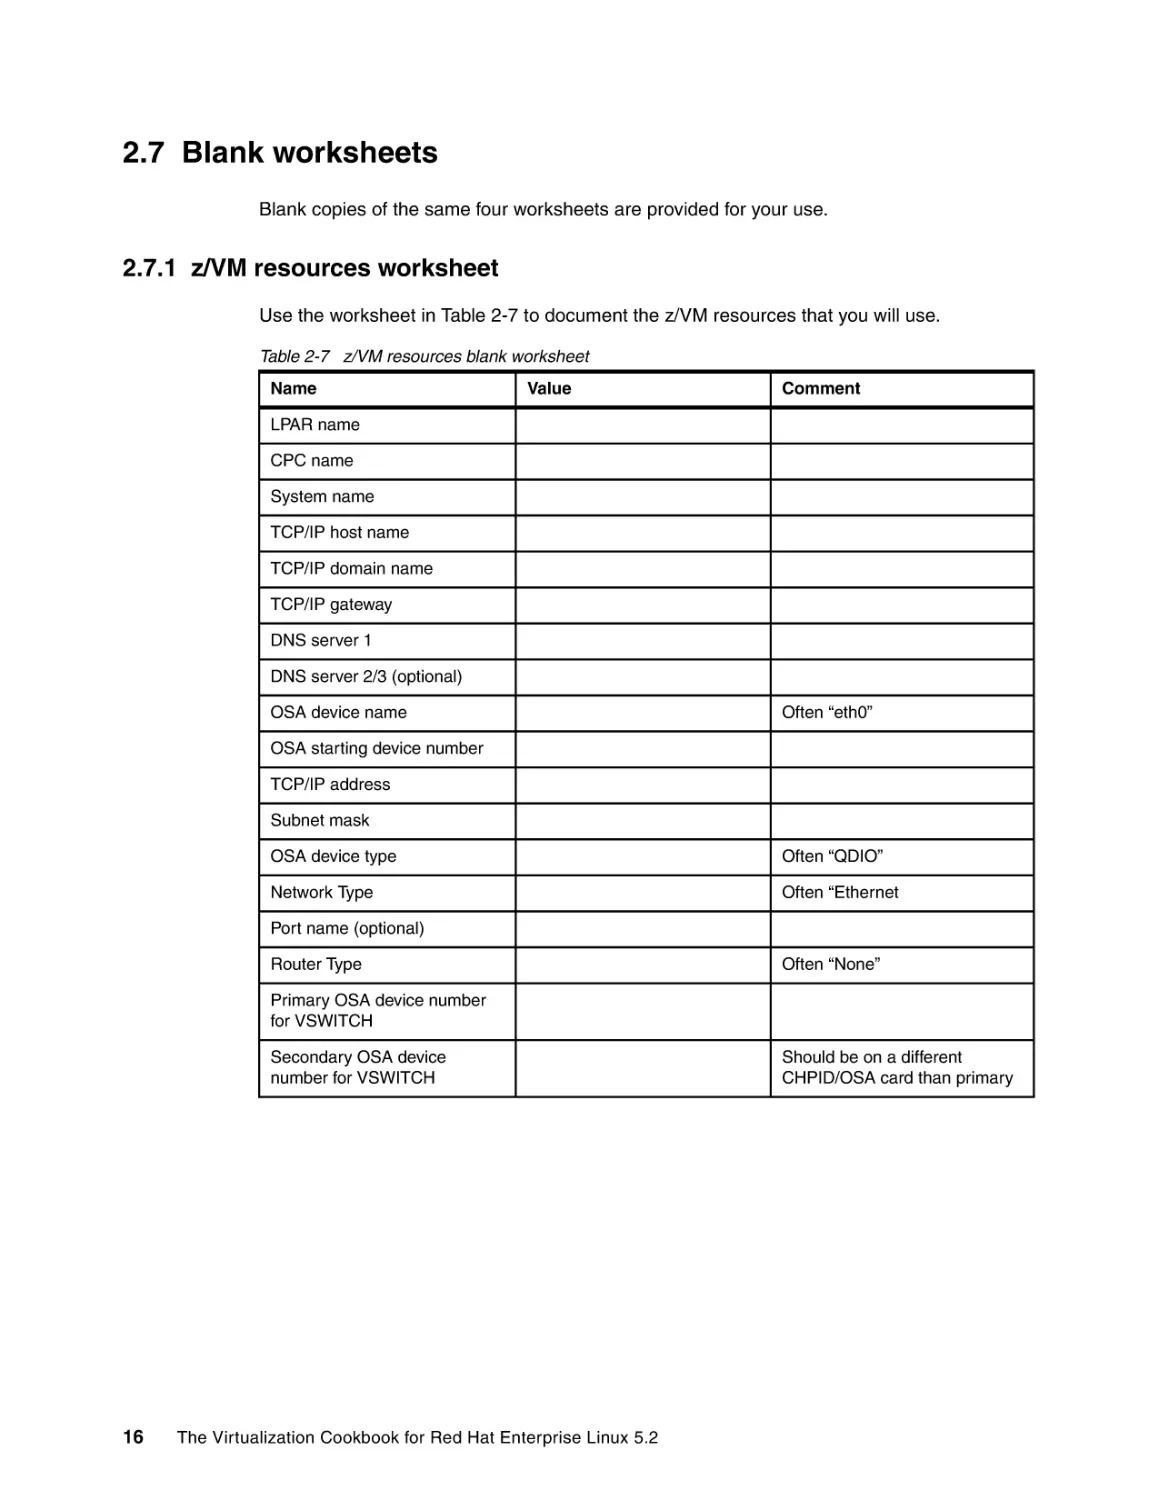 2.7 Blank worksheets
2.7.1 z/VM resources worksheet